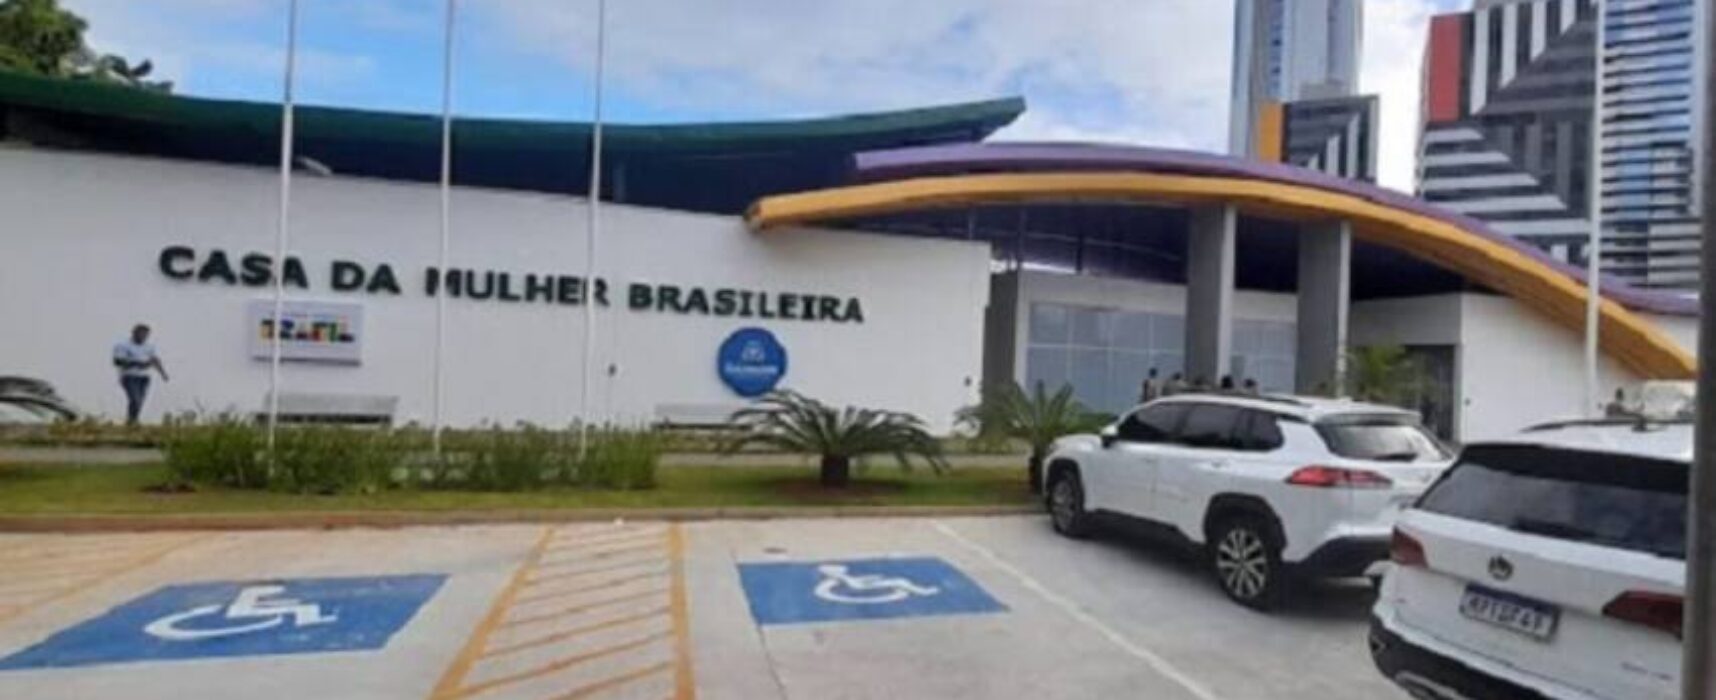 Casa da Mulher Brasileira será entregue nesta terça em Salvador